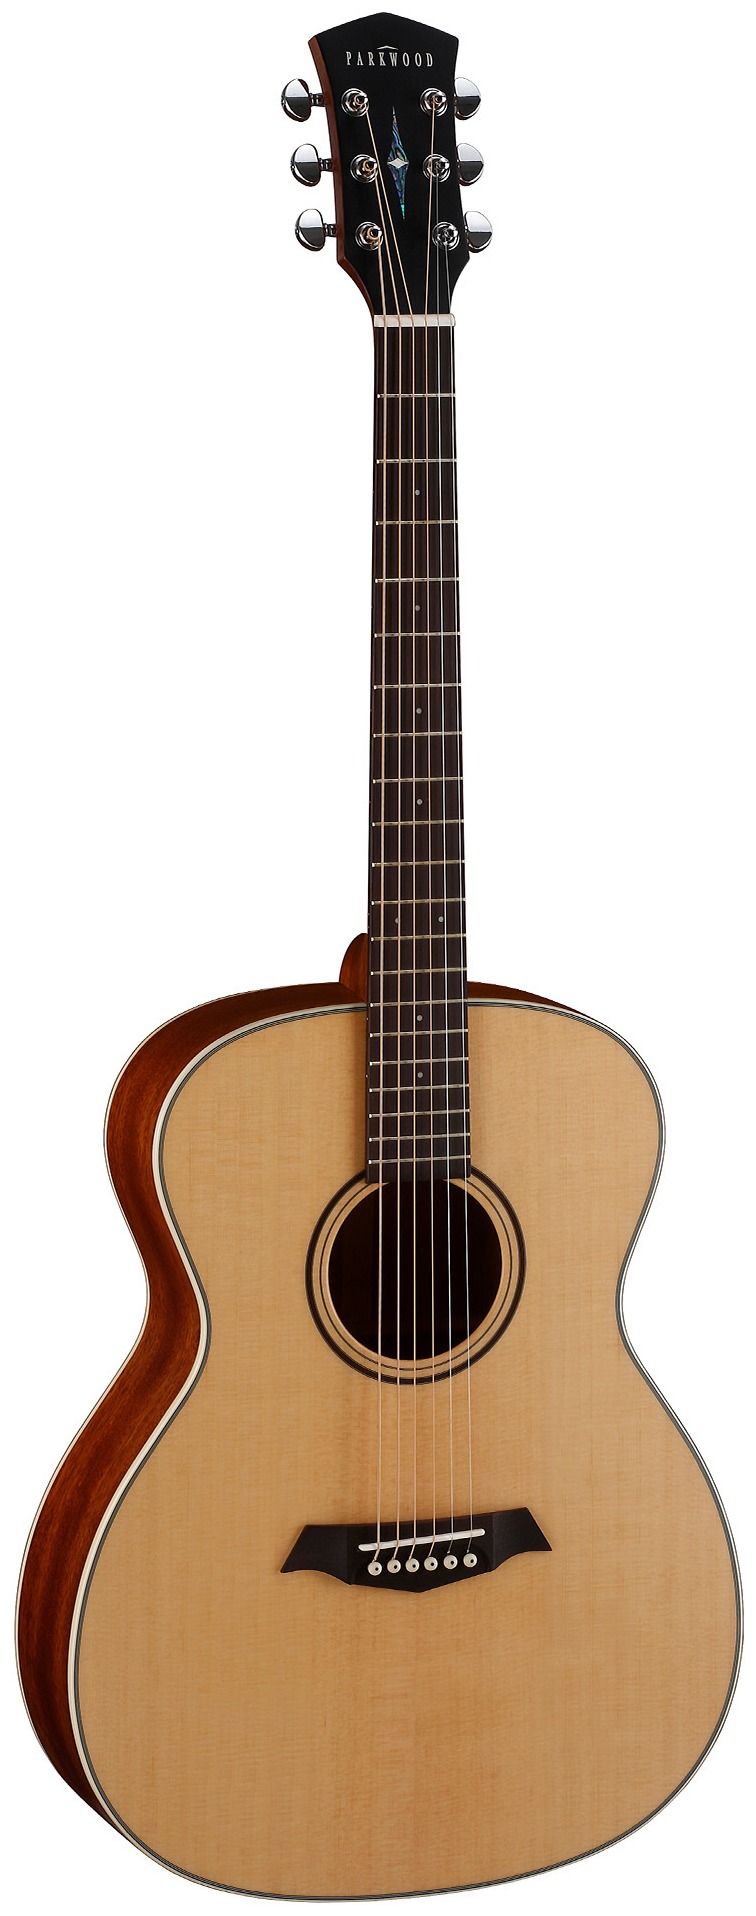 Акустические гитары Parkwood S22-GT (чехол в комплекте) акустические гитары parkwood s62 чехол в комплекте